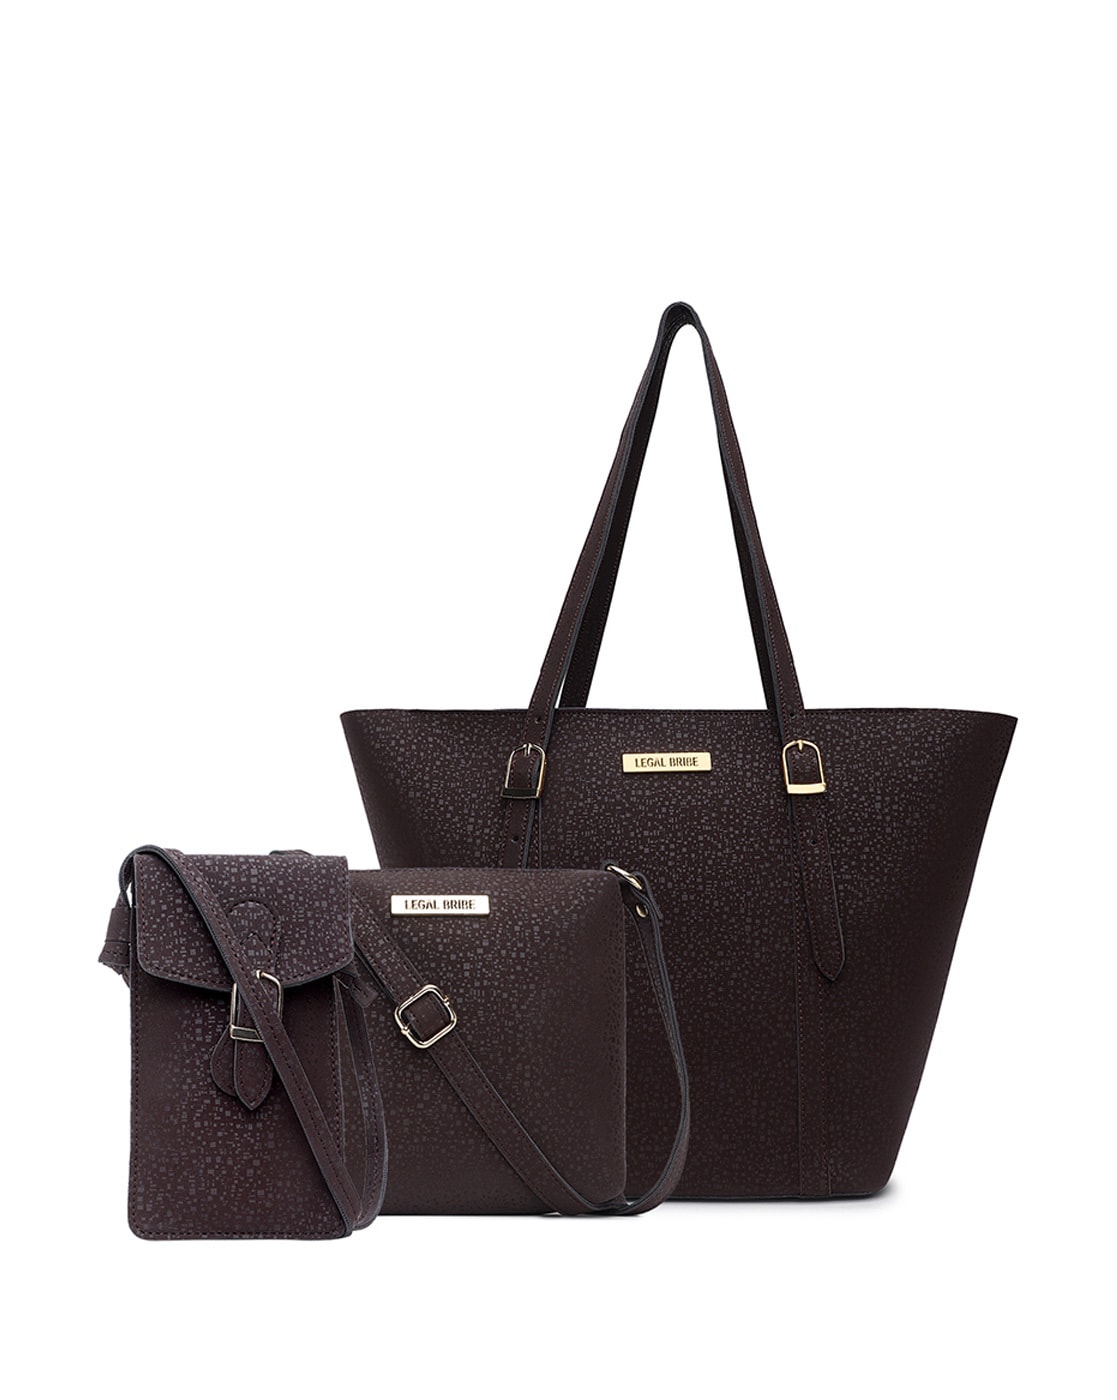 Buy Legal Bribe Textured Stylish Shoulder Bag - Beige online